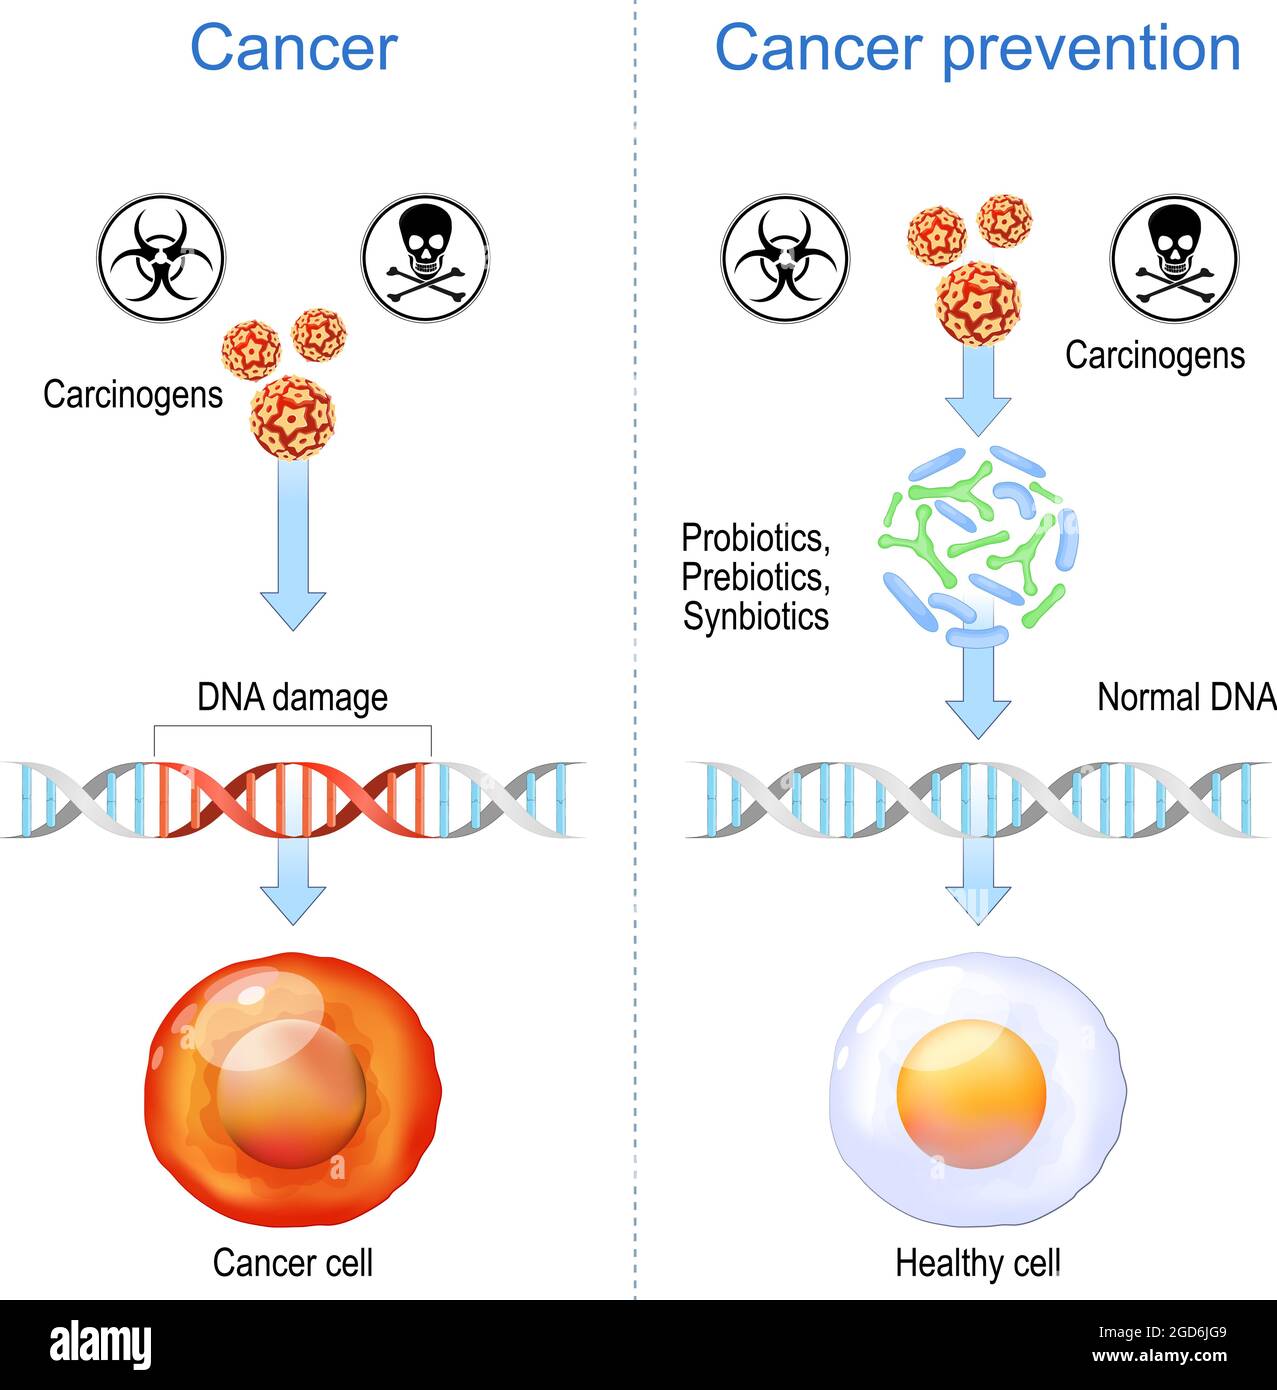 Prévention du cancer. Cellules saines et cellules cancéreuses avec des dommages à l'ADN. Les carcinogènes favorisent la formation de tumeurs malignes en endommagant le génome. Probiotiques Illustration de Vecteur